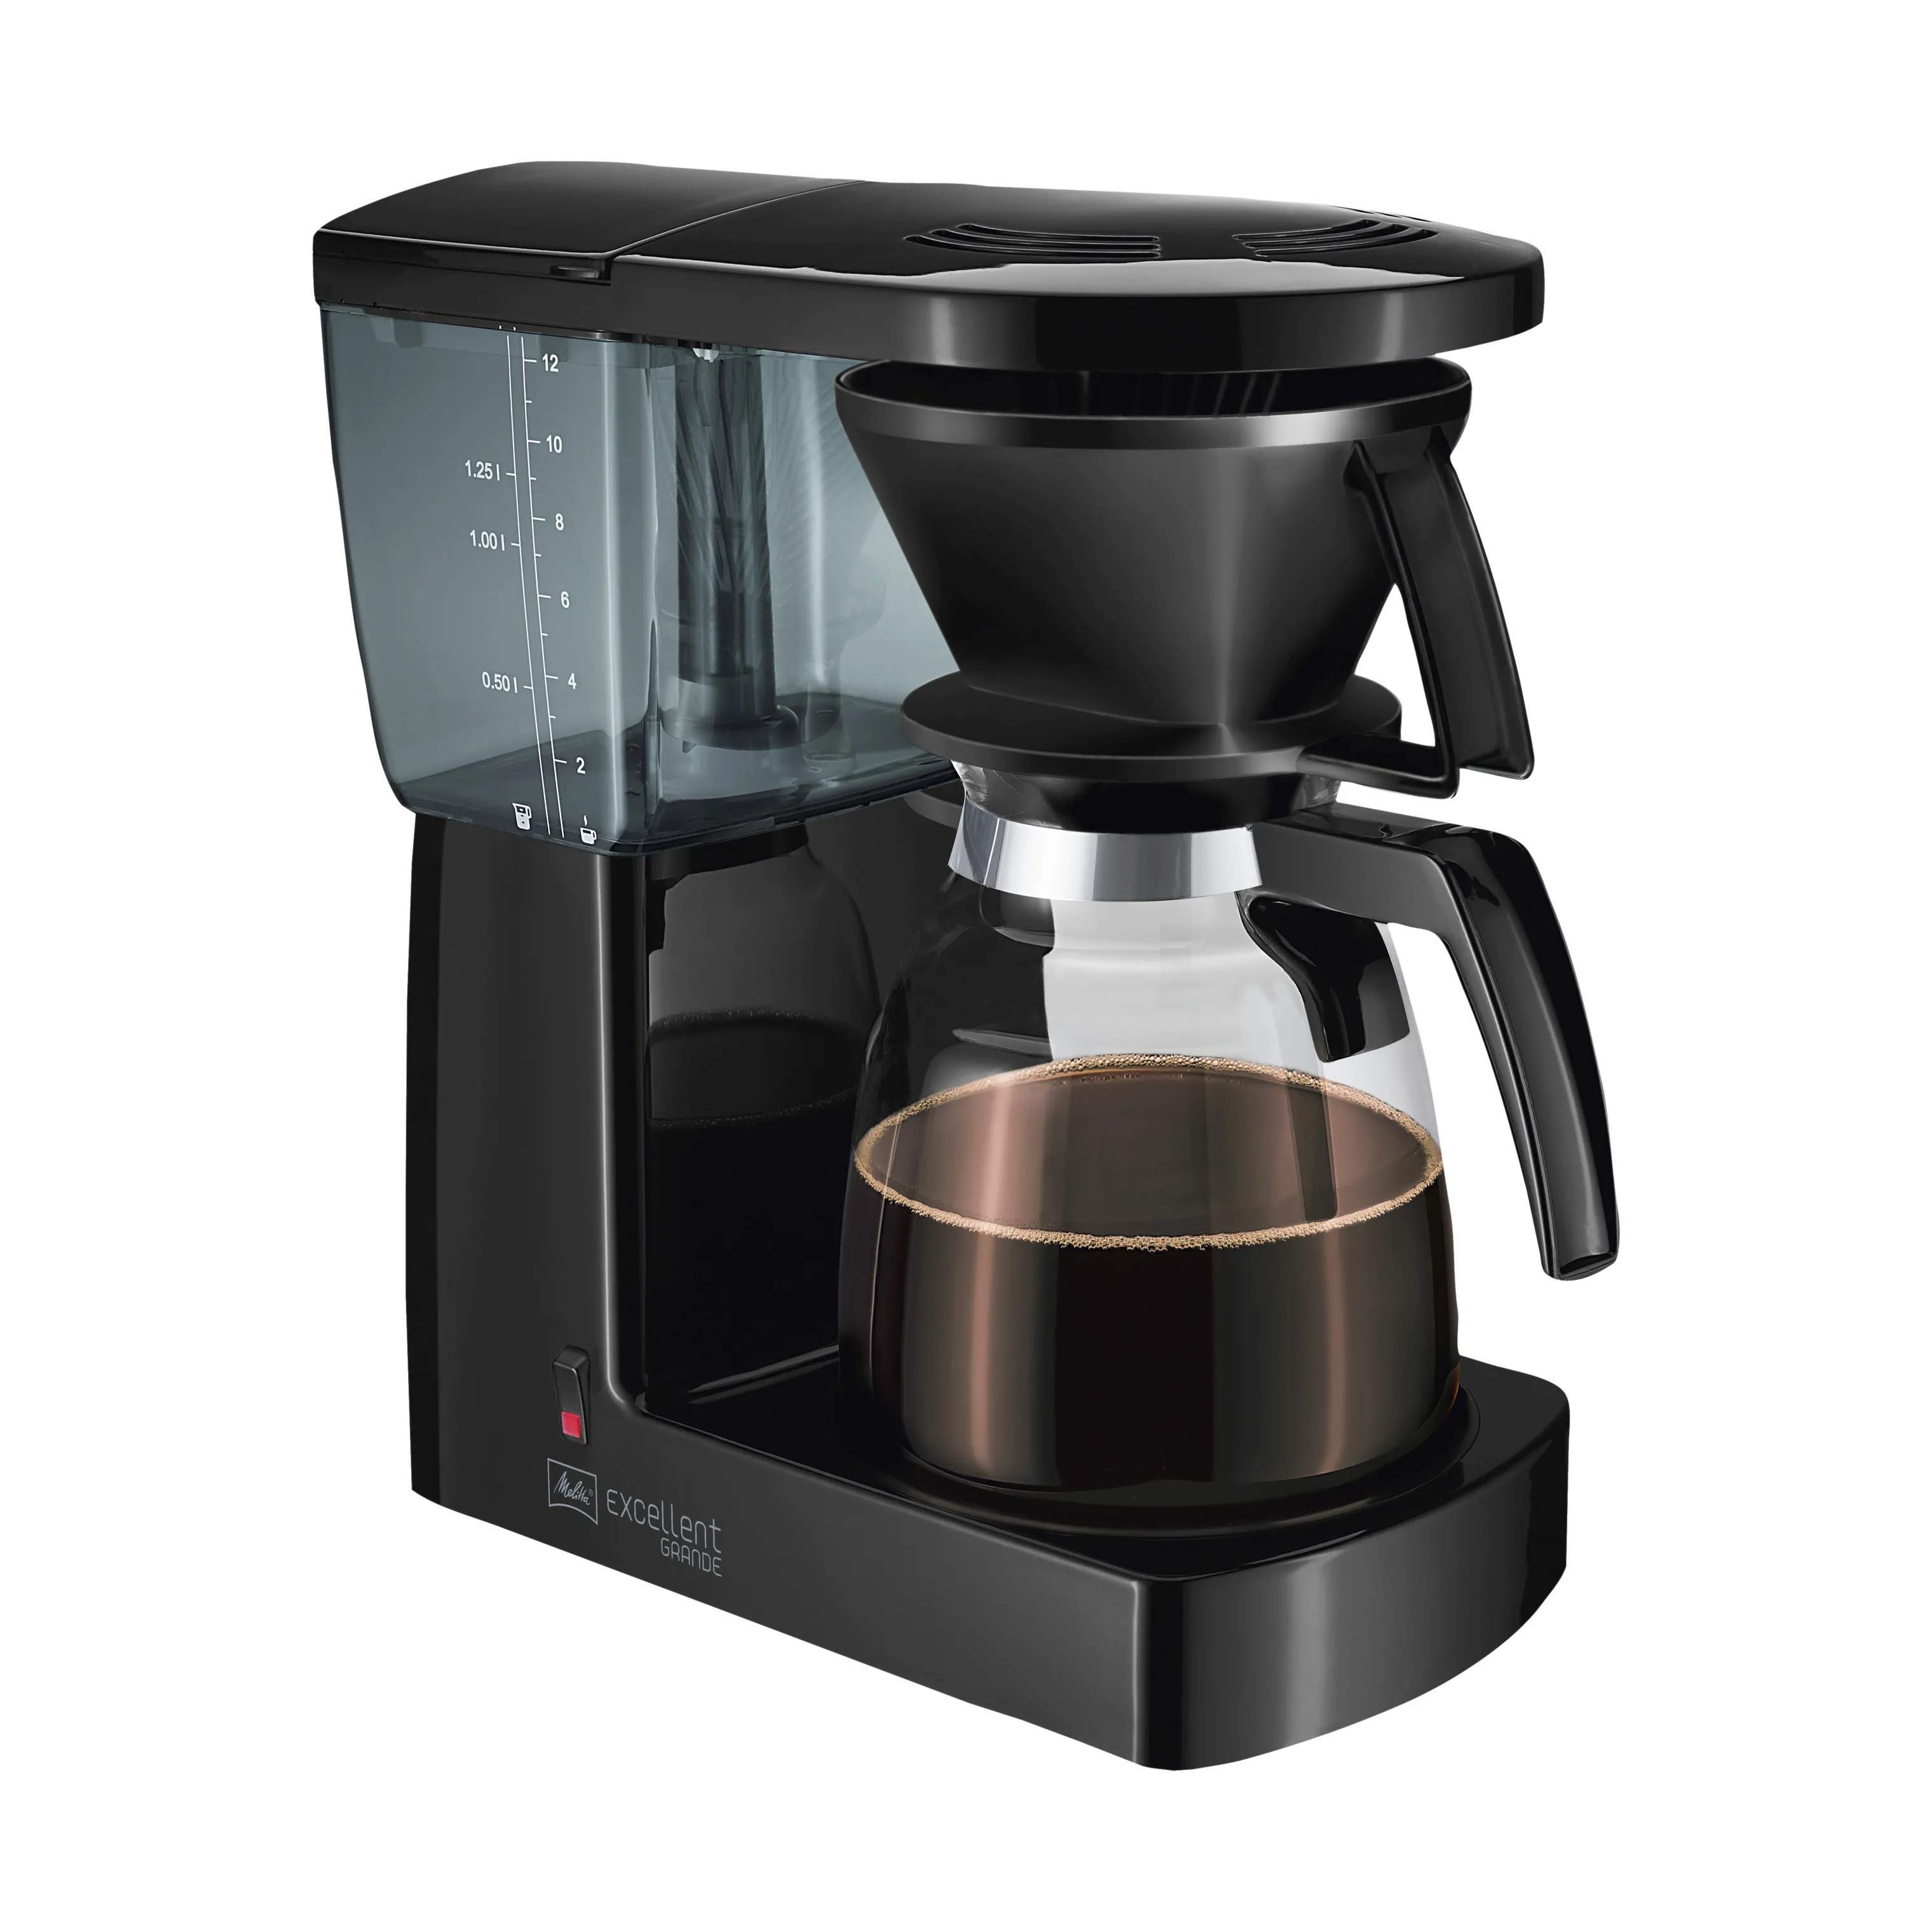 Excellent Grande Kaffemaskine 3.0